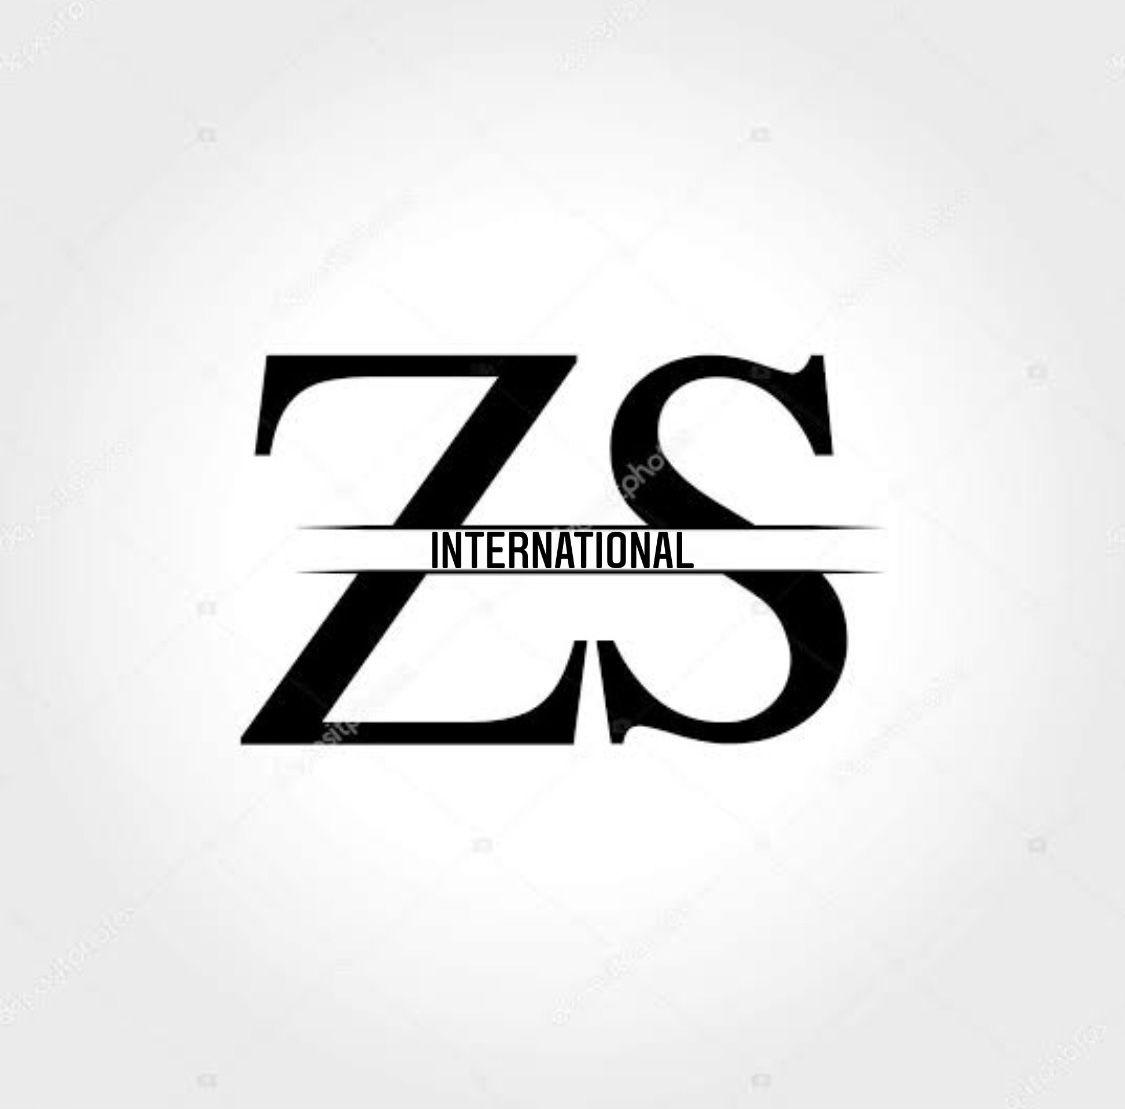 Z S INTERNATIONAL